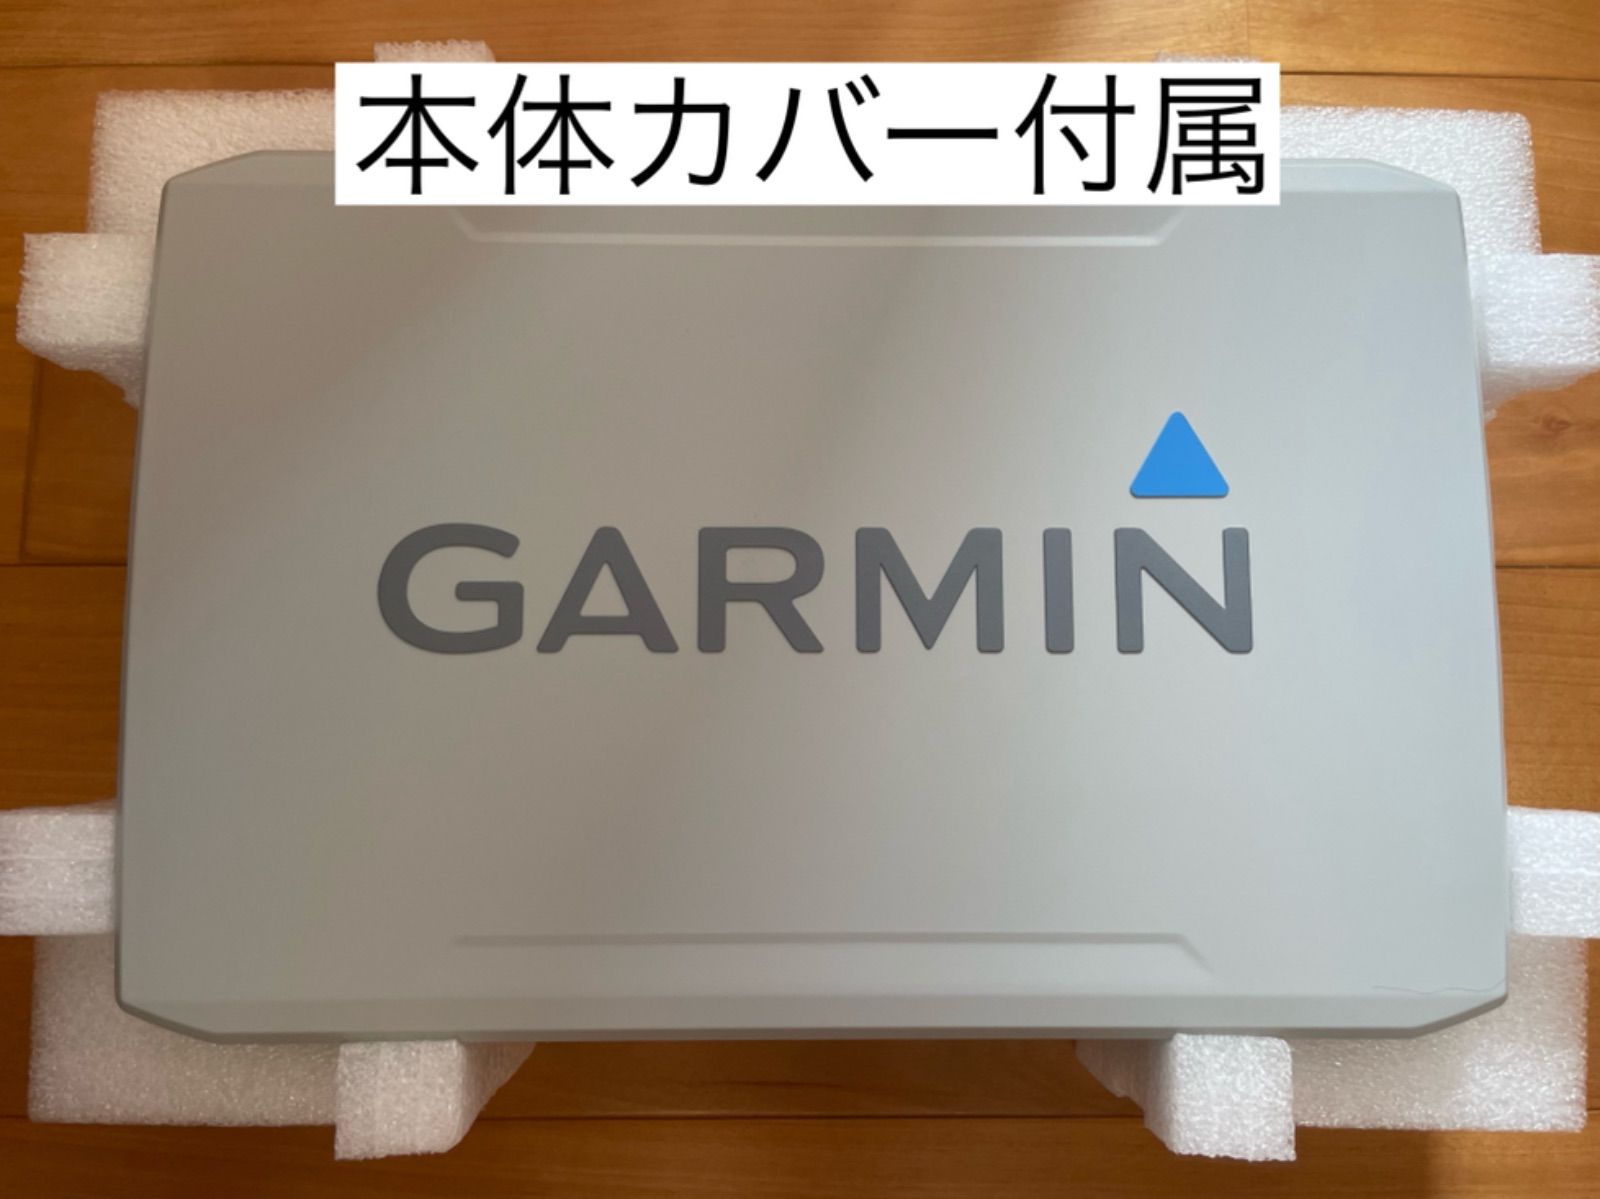 ガーミン エコマップウルトラ 12インチ+GT51M振動子セット 日本語表示 ...